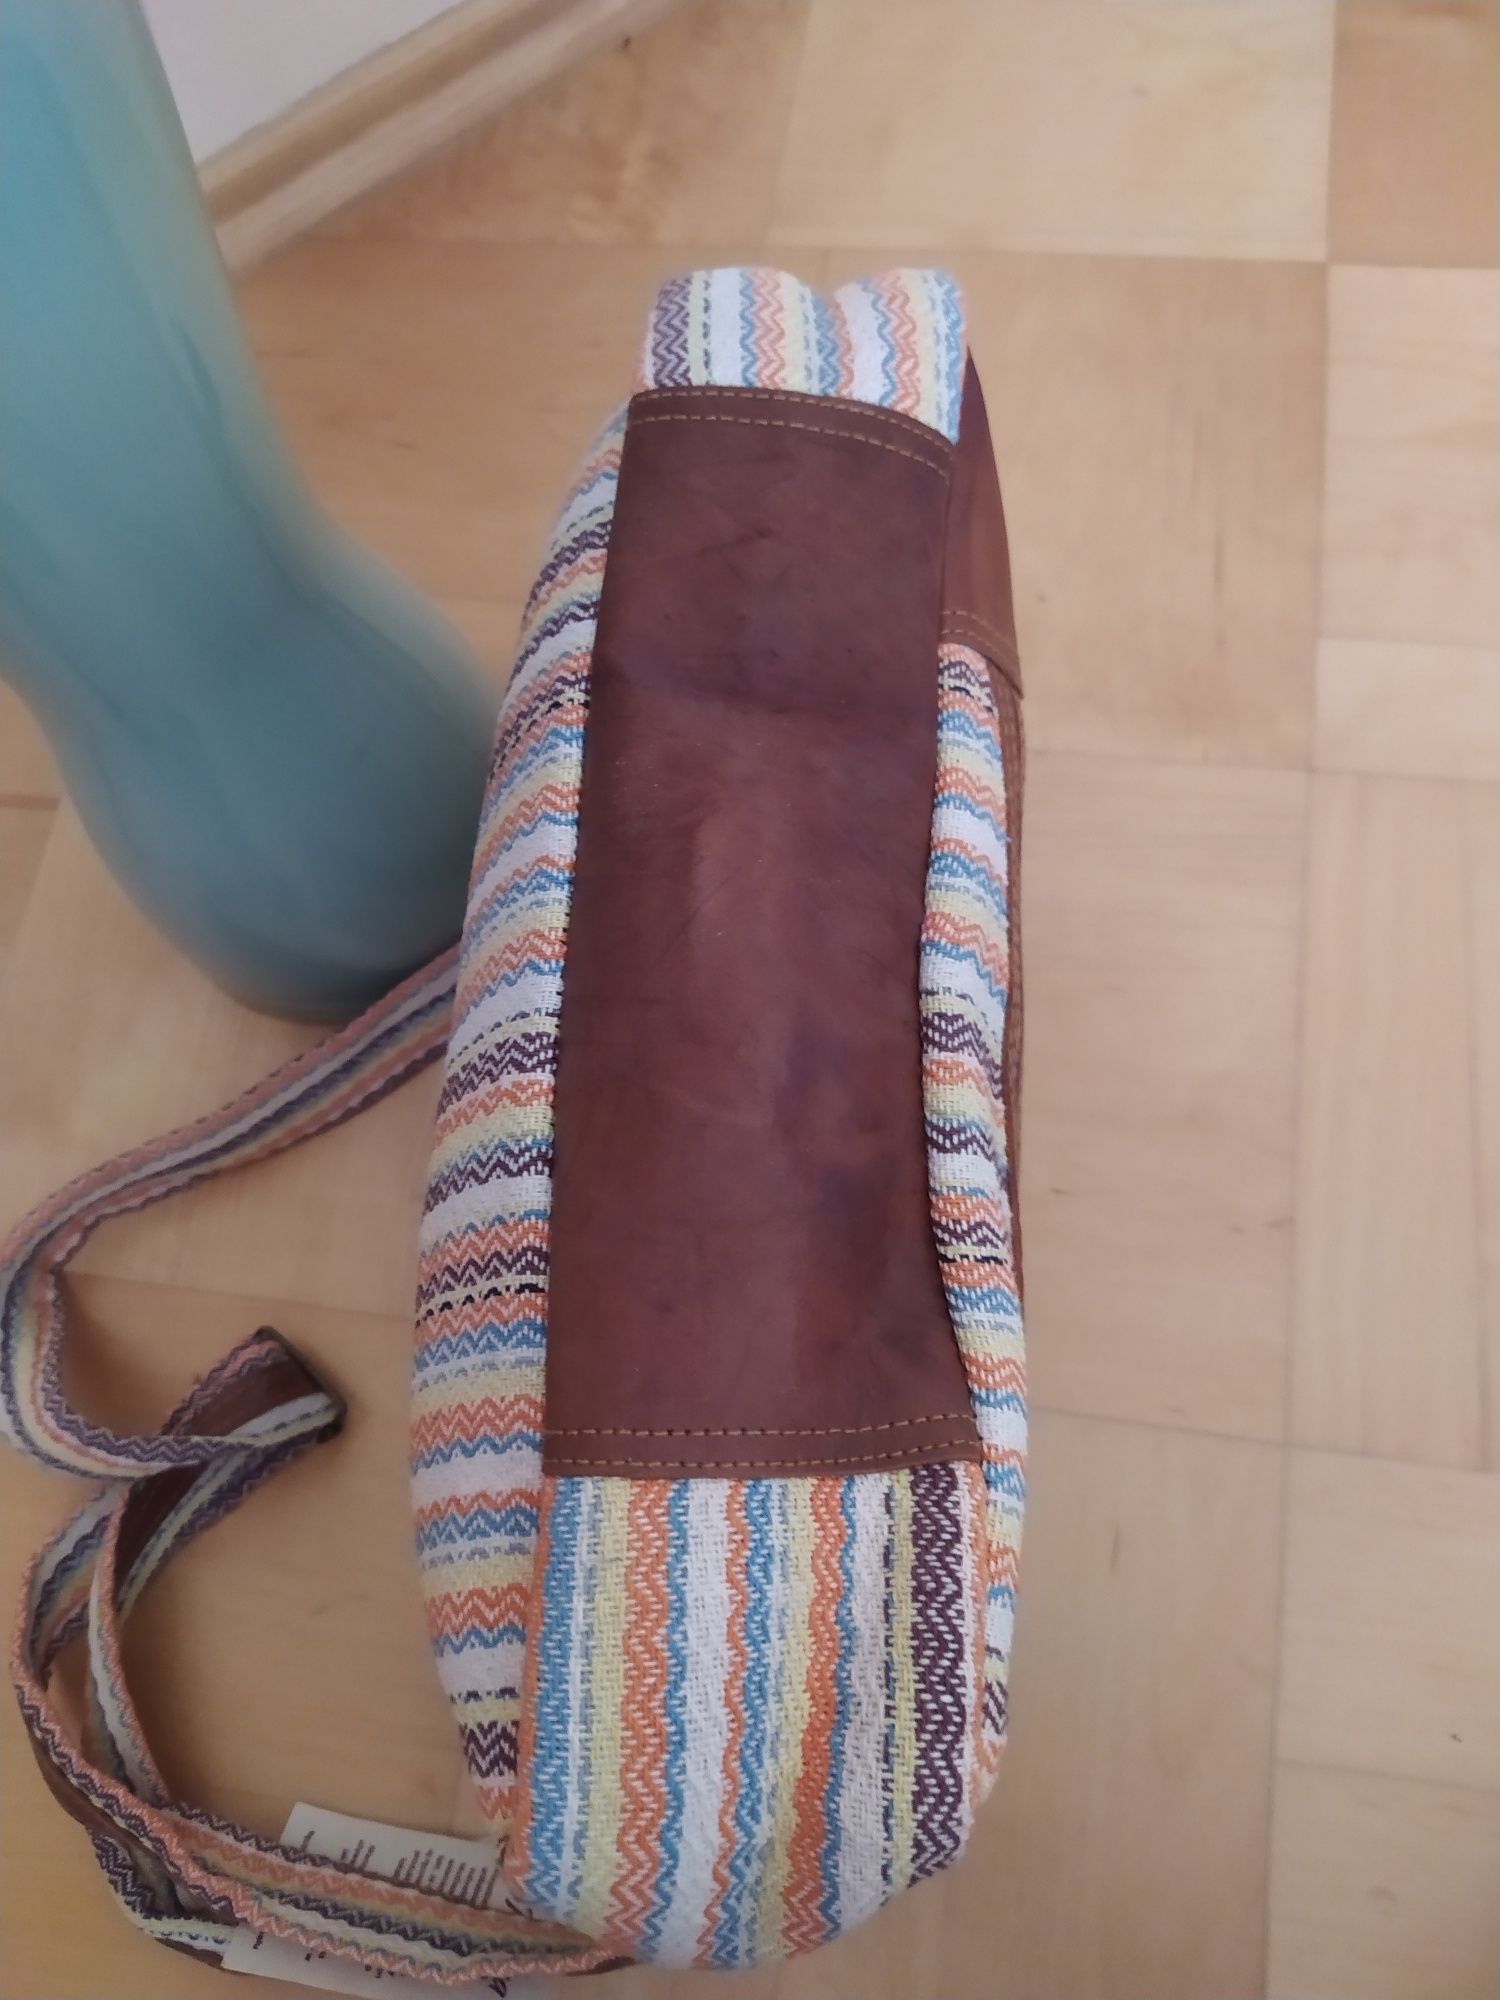 torba aktówka z płótna skóra naturalna A4 kolorowa bawełna purna craft